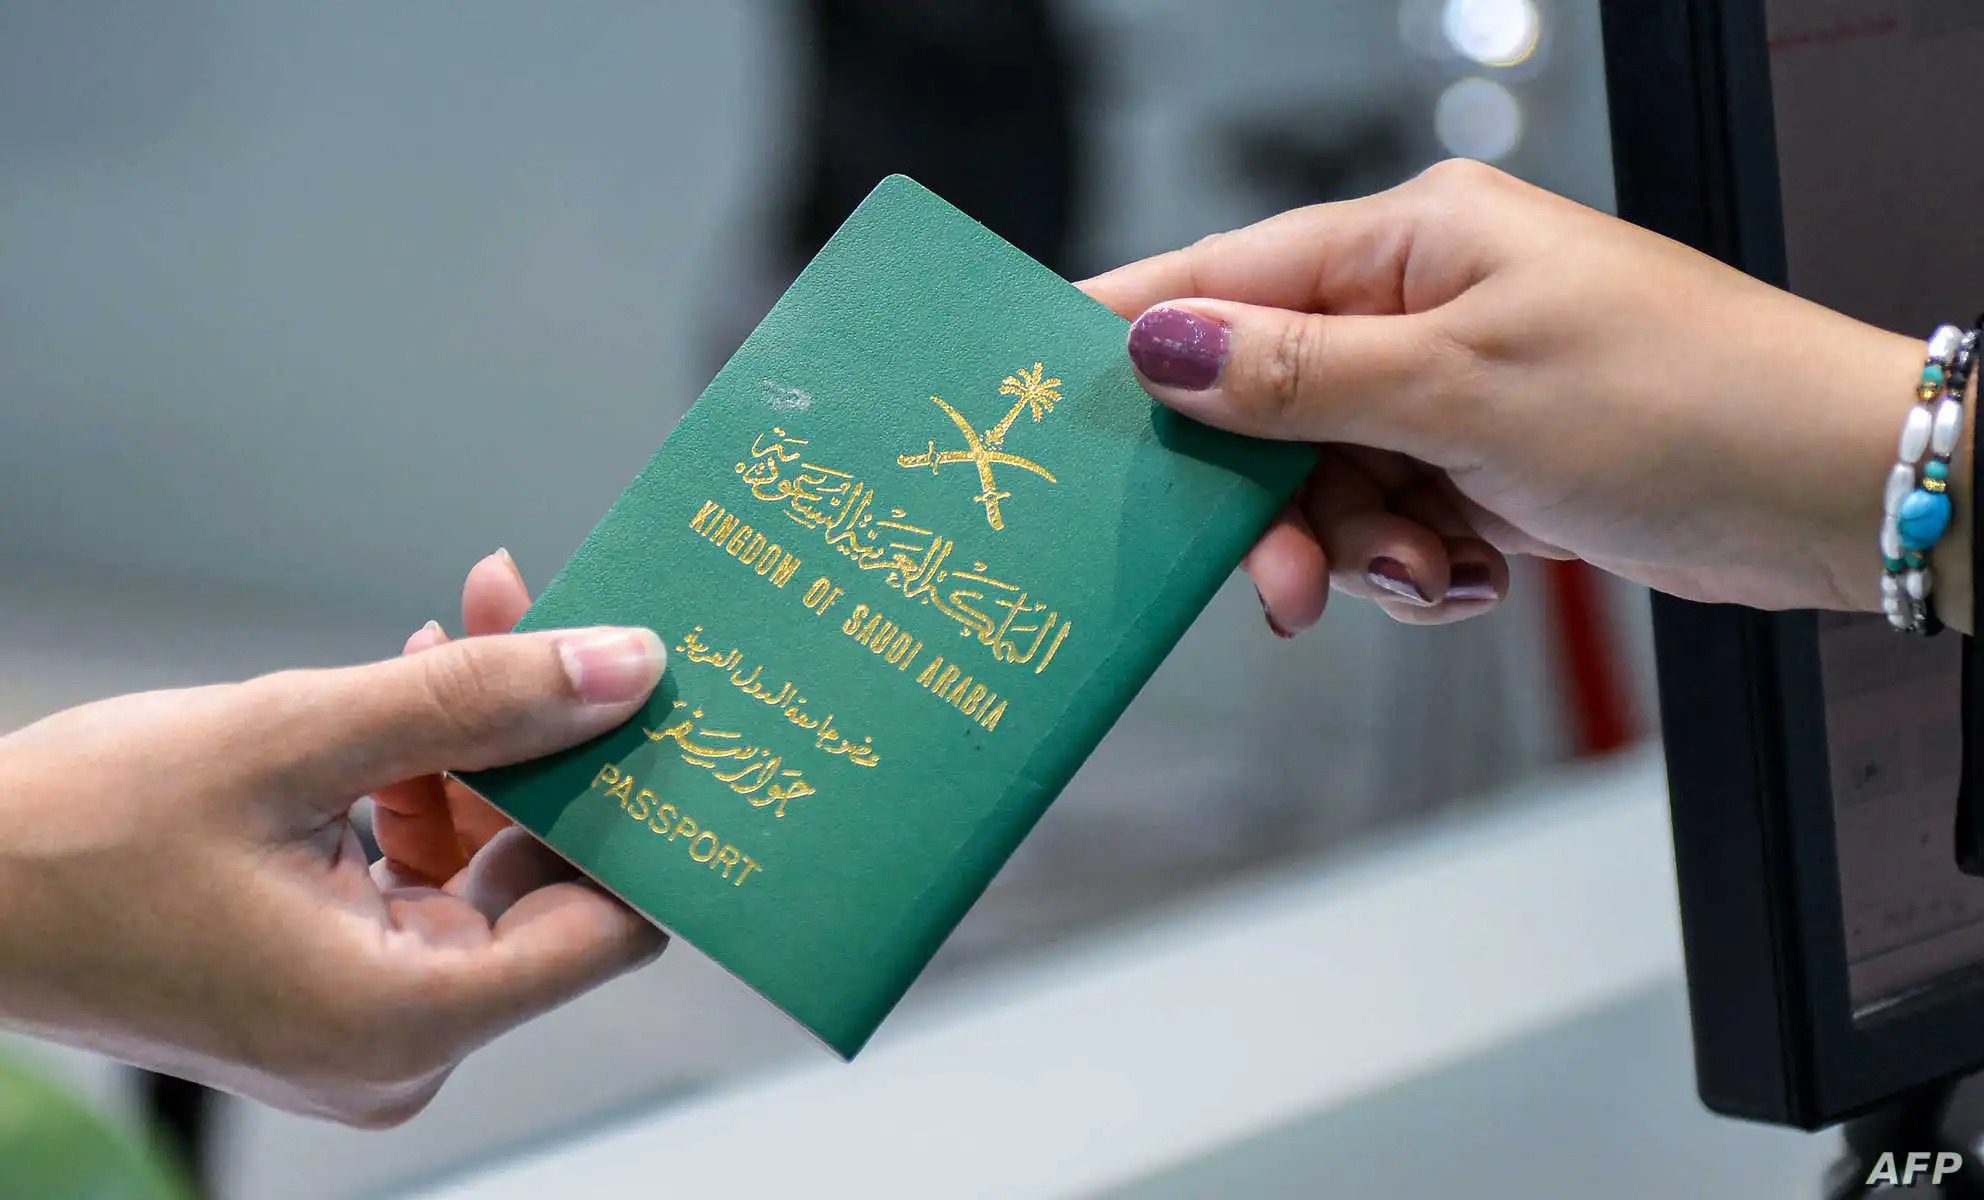 شروط الحصول على الجنسية السعودية والاوراق اللازمة